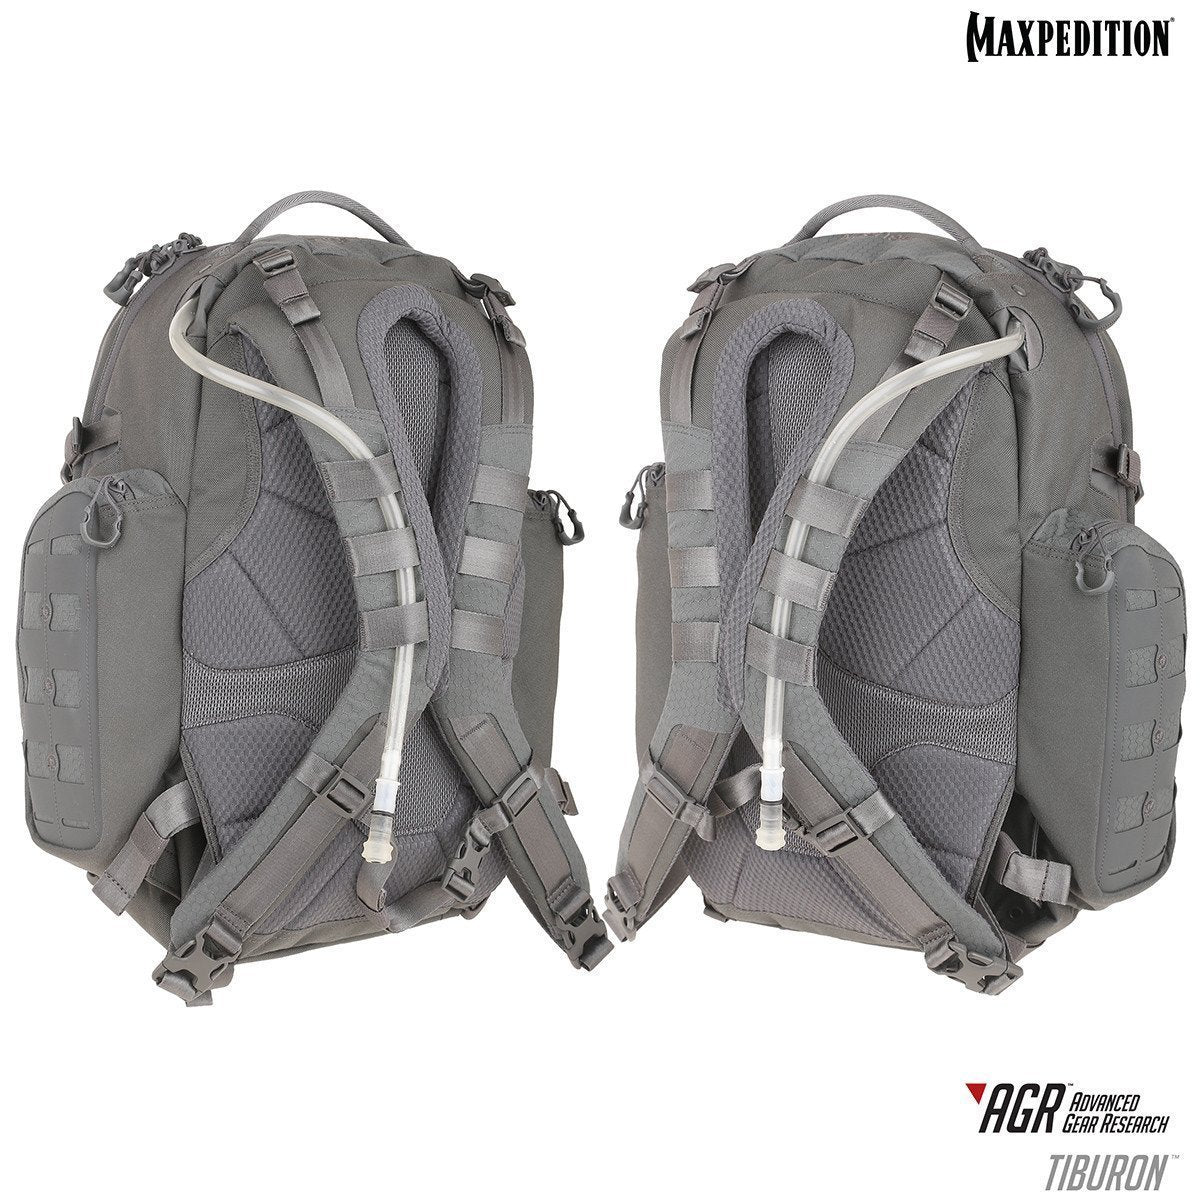 Maxpedition Tiburon Backpack 34L Backpacks Maxpedition Tactical Gear Supplier Tactical Distributors Australia